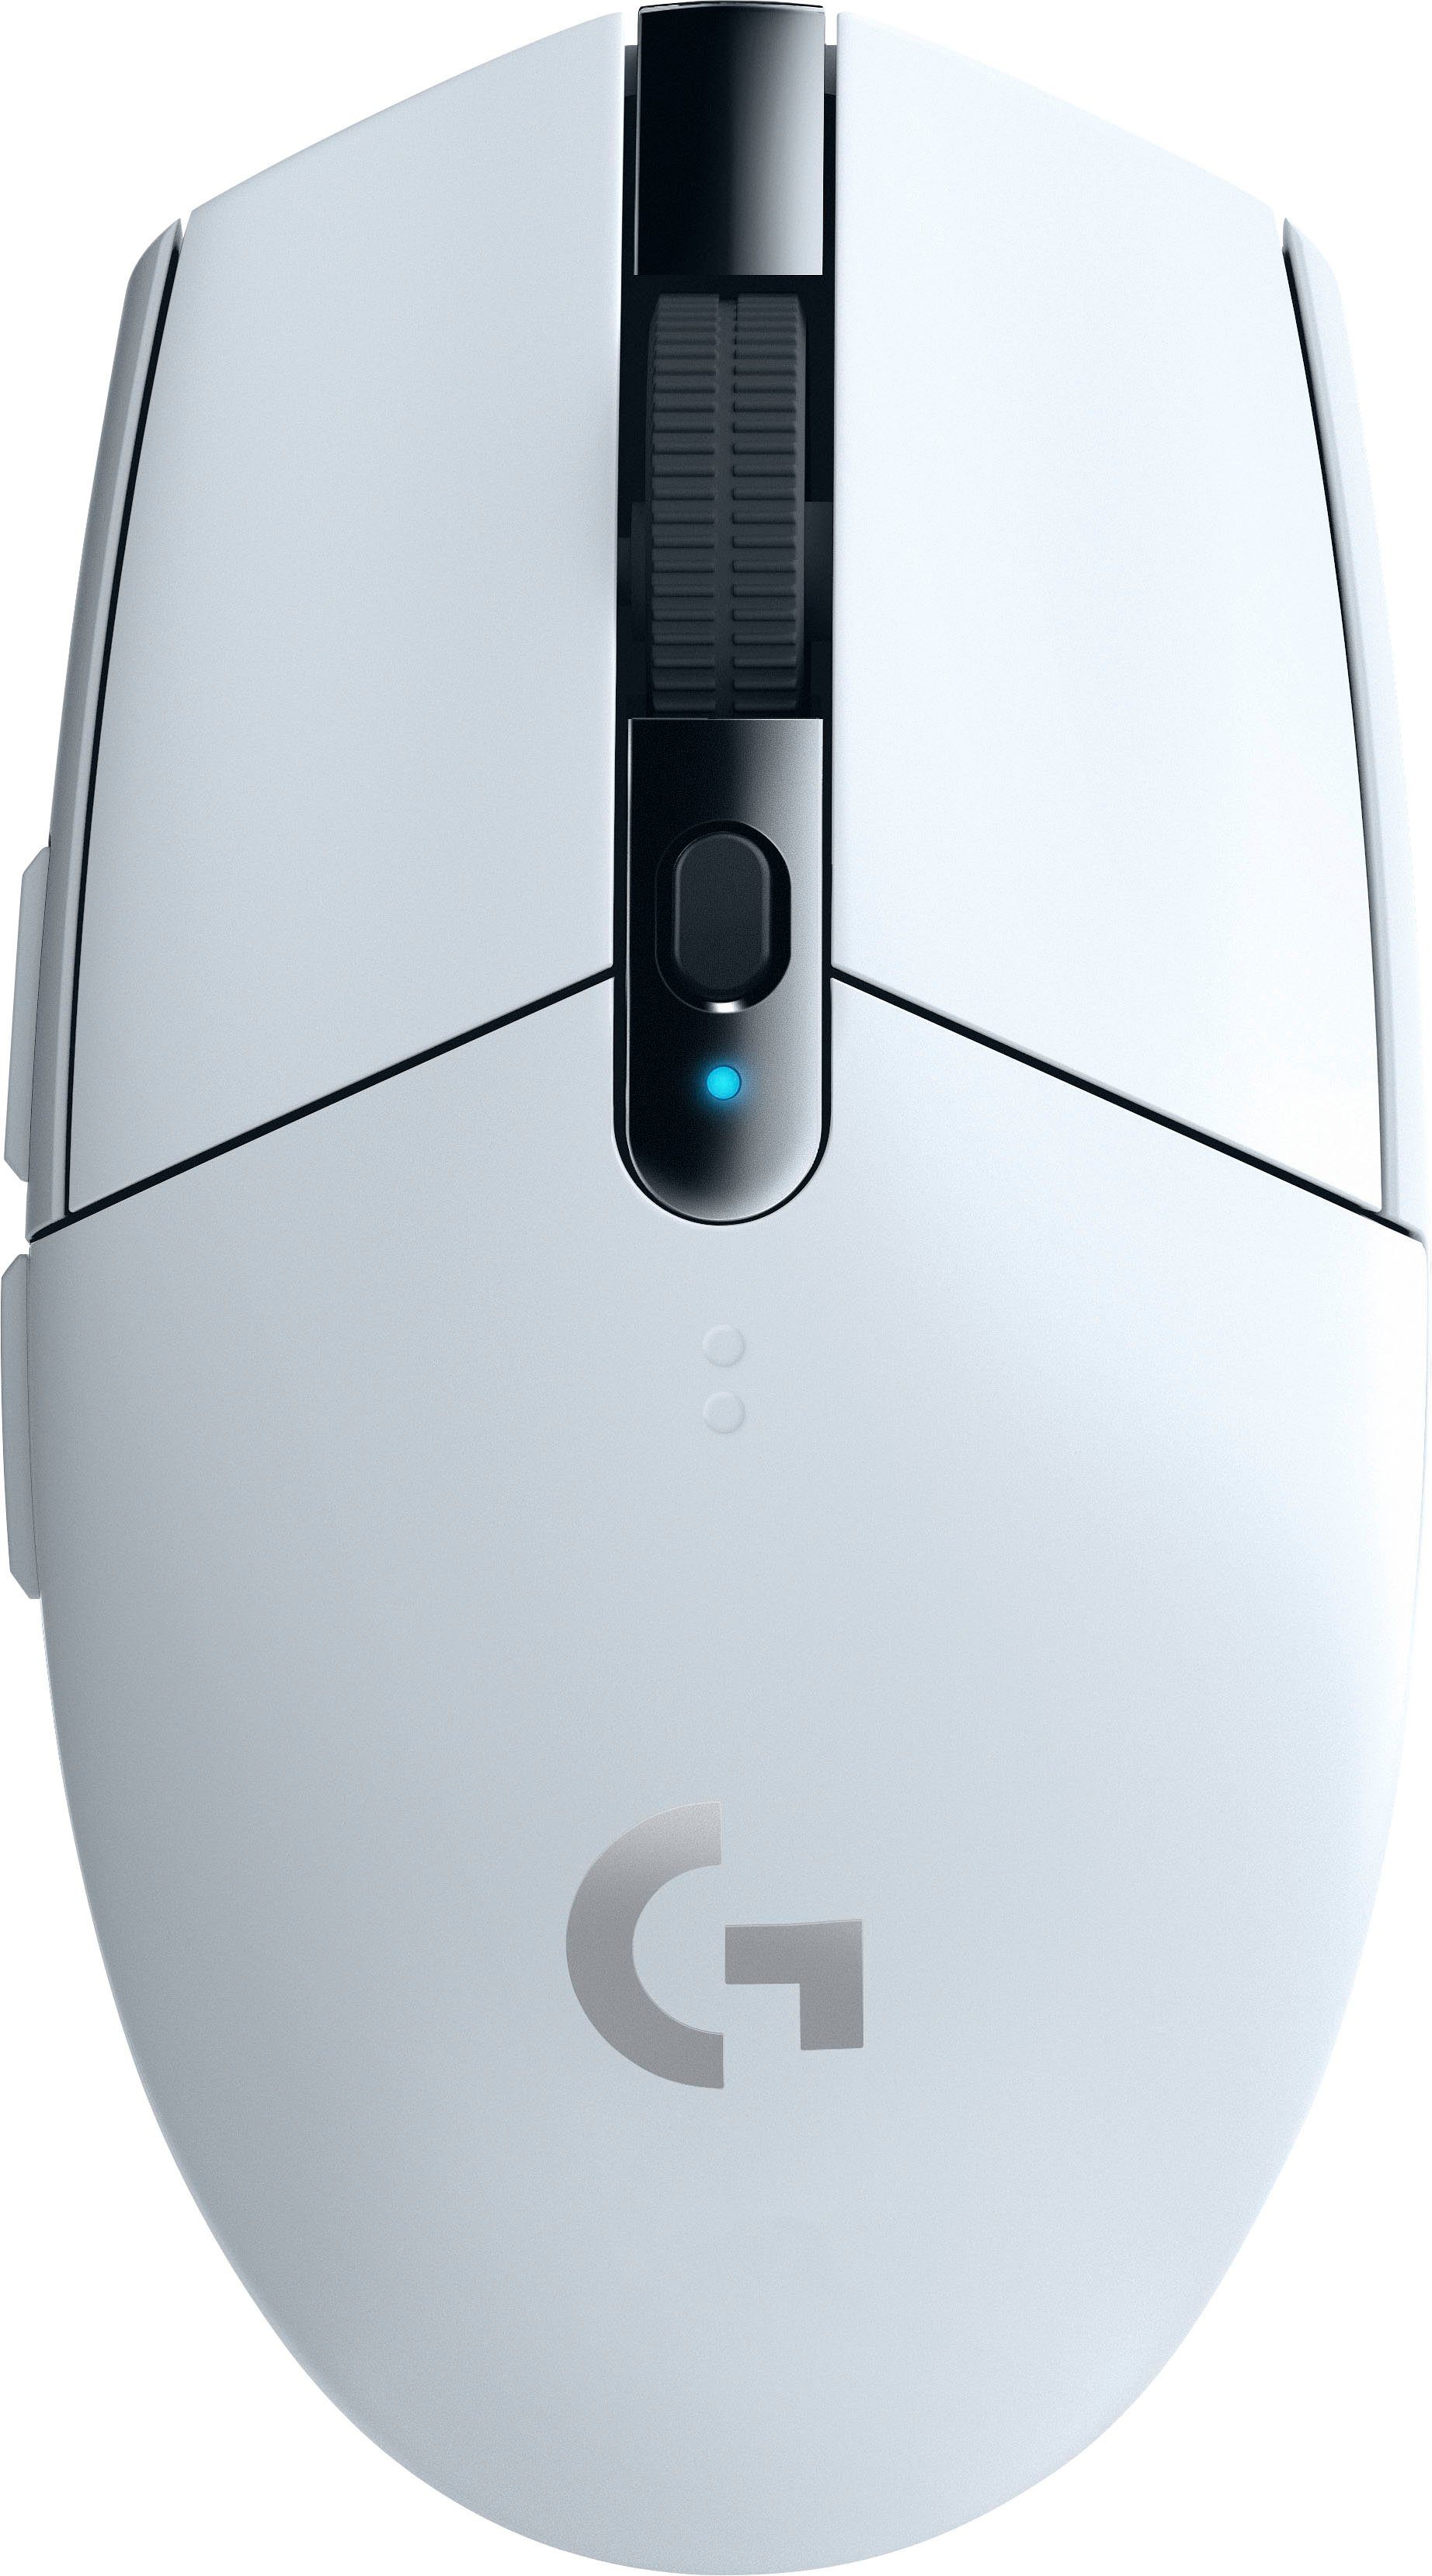 Logitech G »Die G305 ist eine kabellose LIGHTSPEED Gaming-Maus für maximale  Performance dank neuester Technologie zu einem erschwinglichen Preis. Jetzt  in vielen leuchtenden Farben« Gaming-Maus (RF Wireless) online kaufen | OTTO